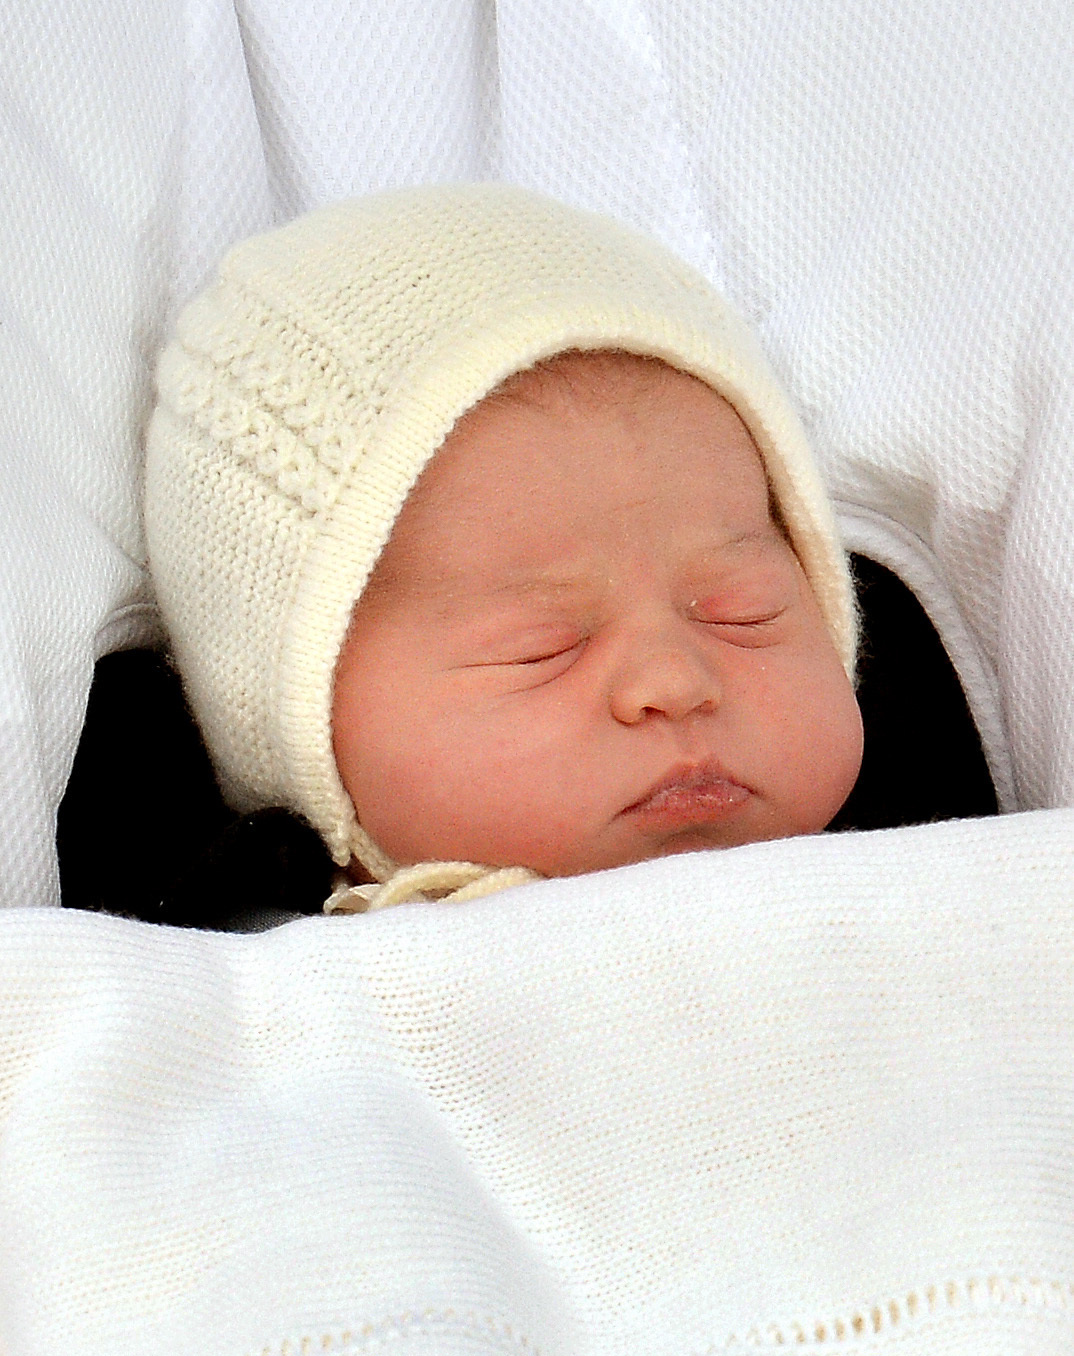 Princess Charlotte on May 2, 2015.